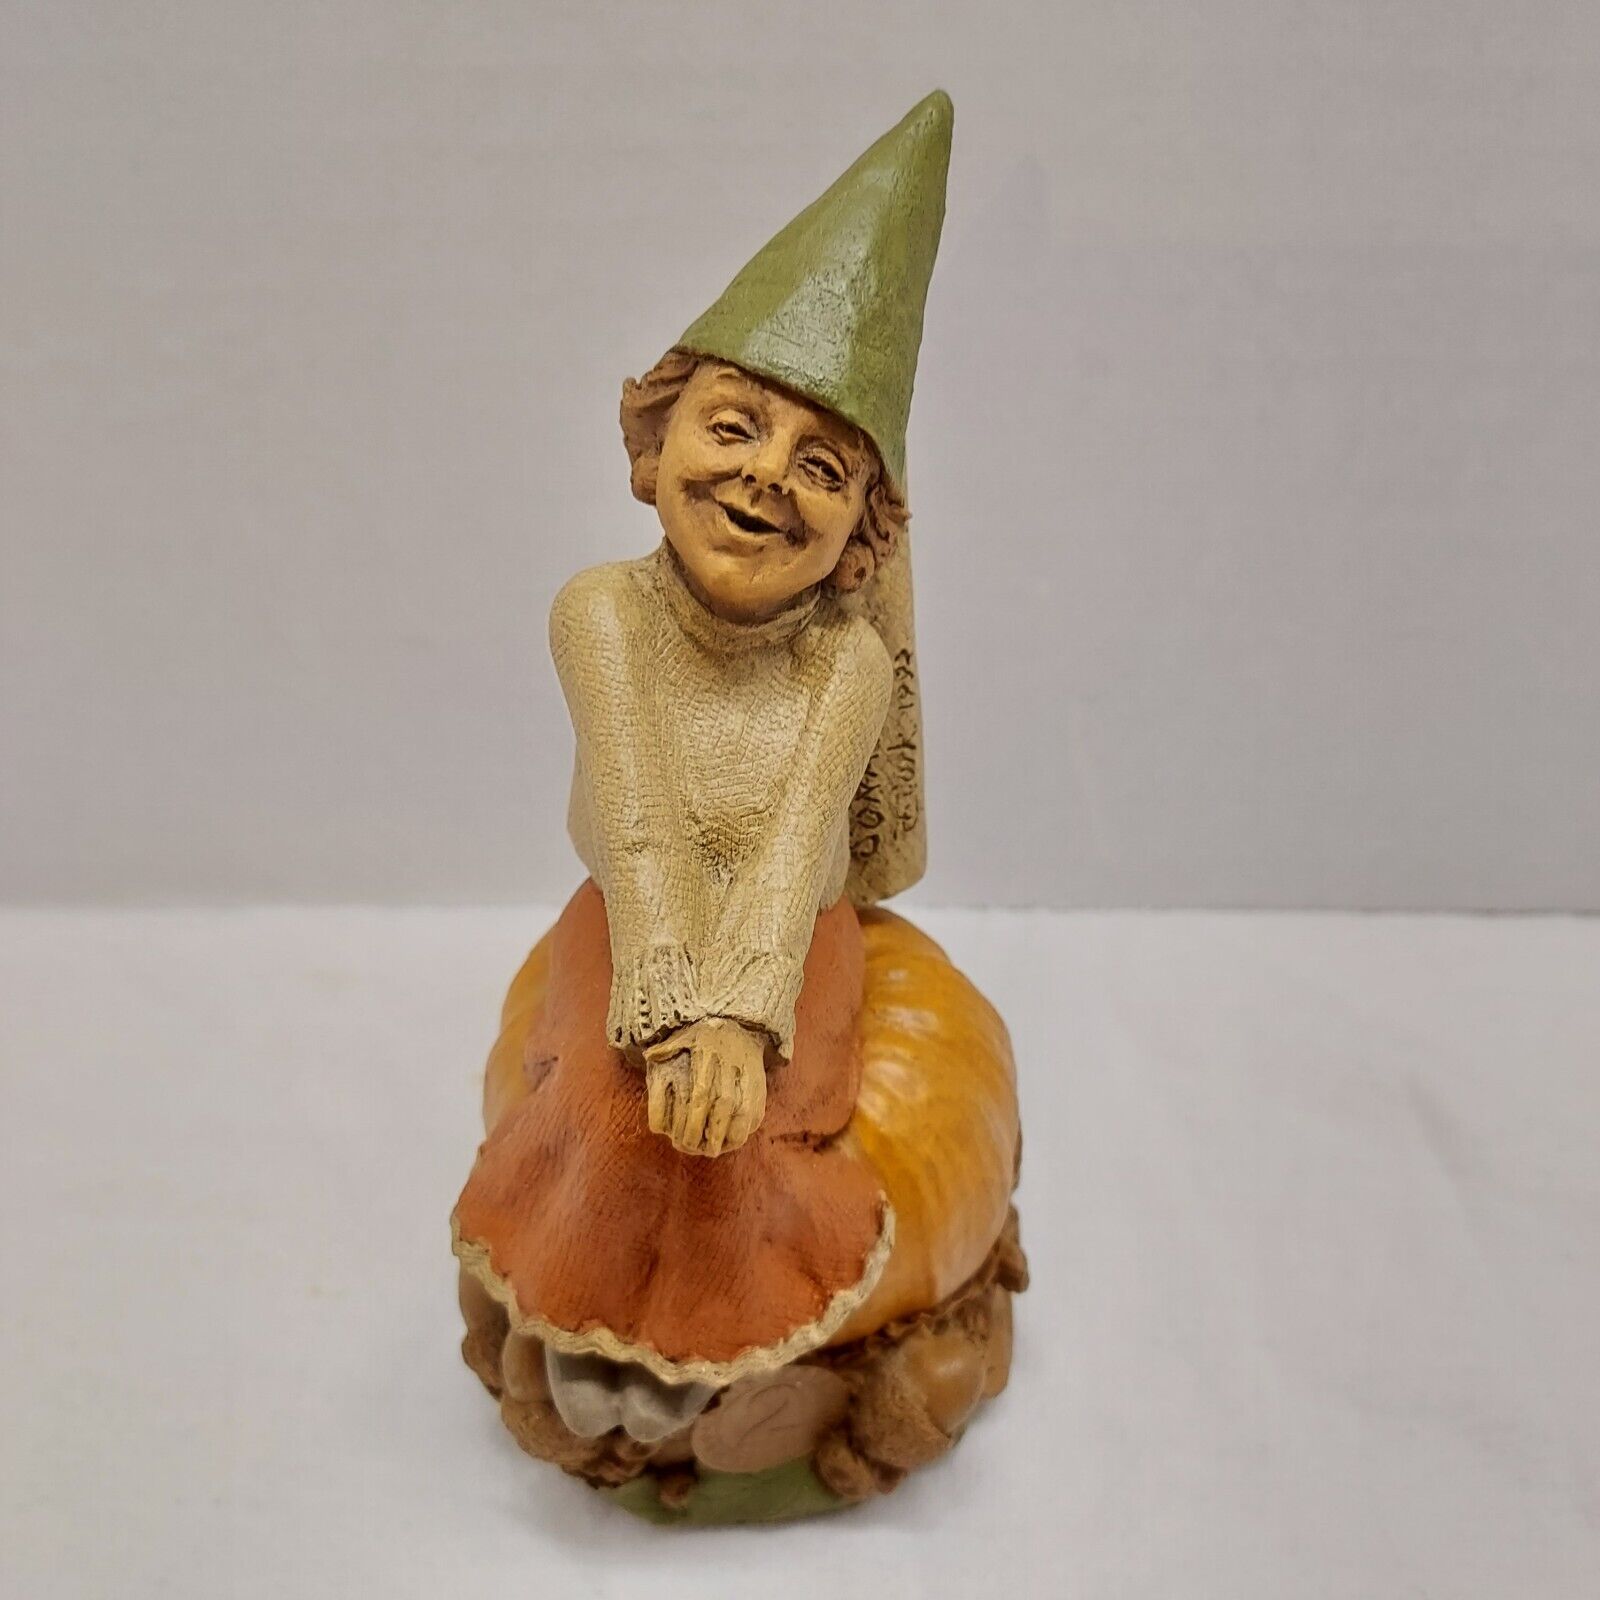 Vintage 1992 Tom Clark delightful figurine, Sonata Sitting on Pumpkin #40, #5206